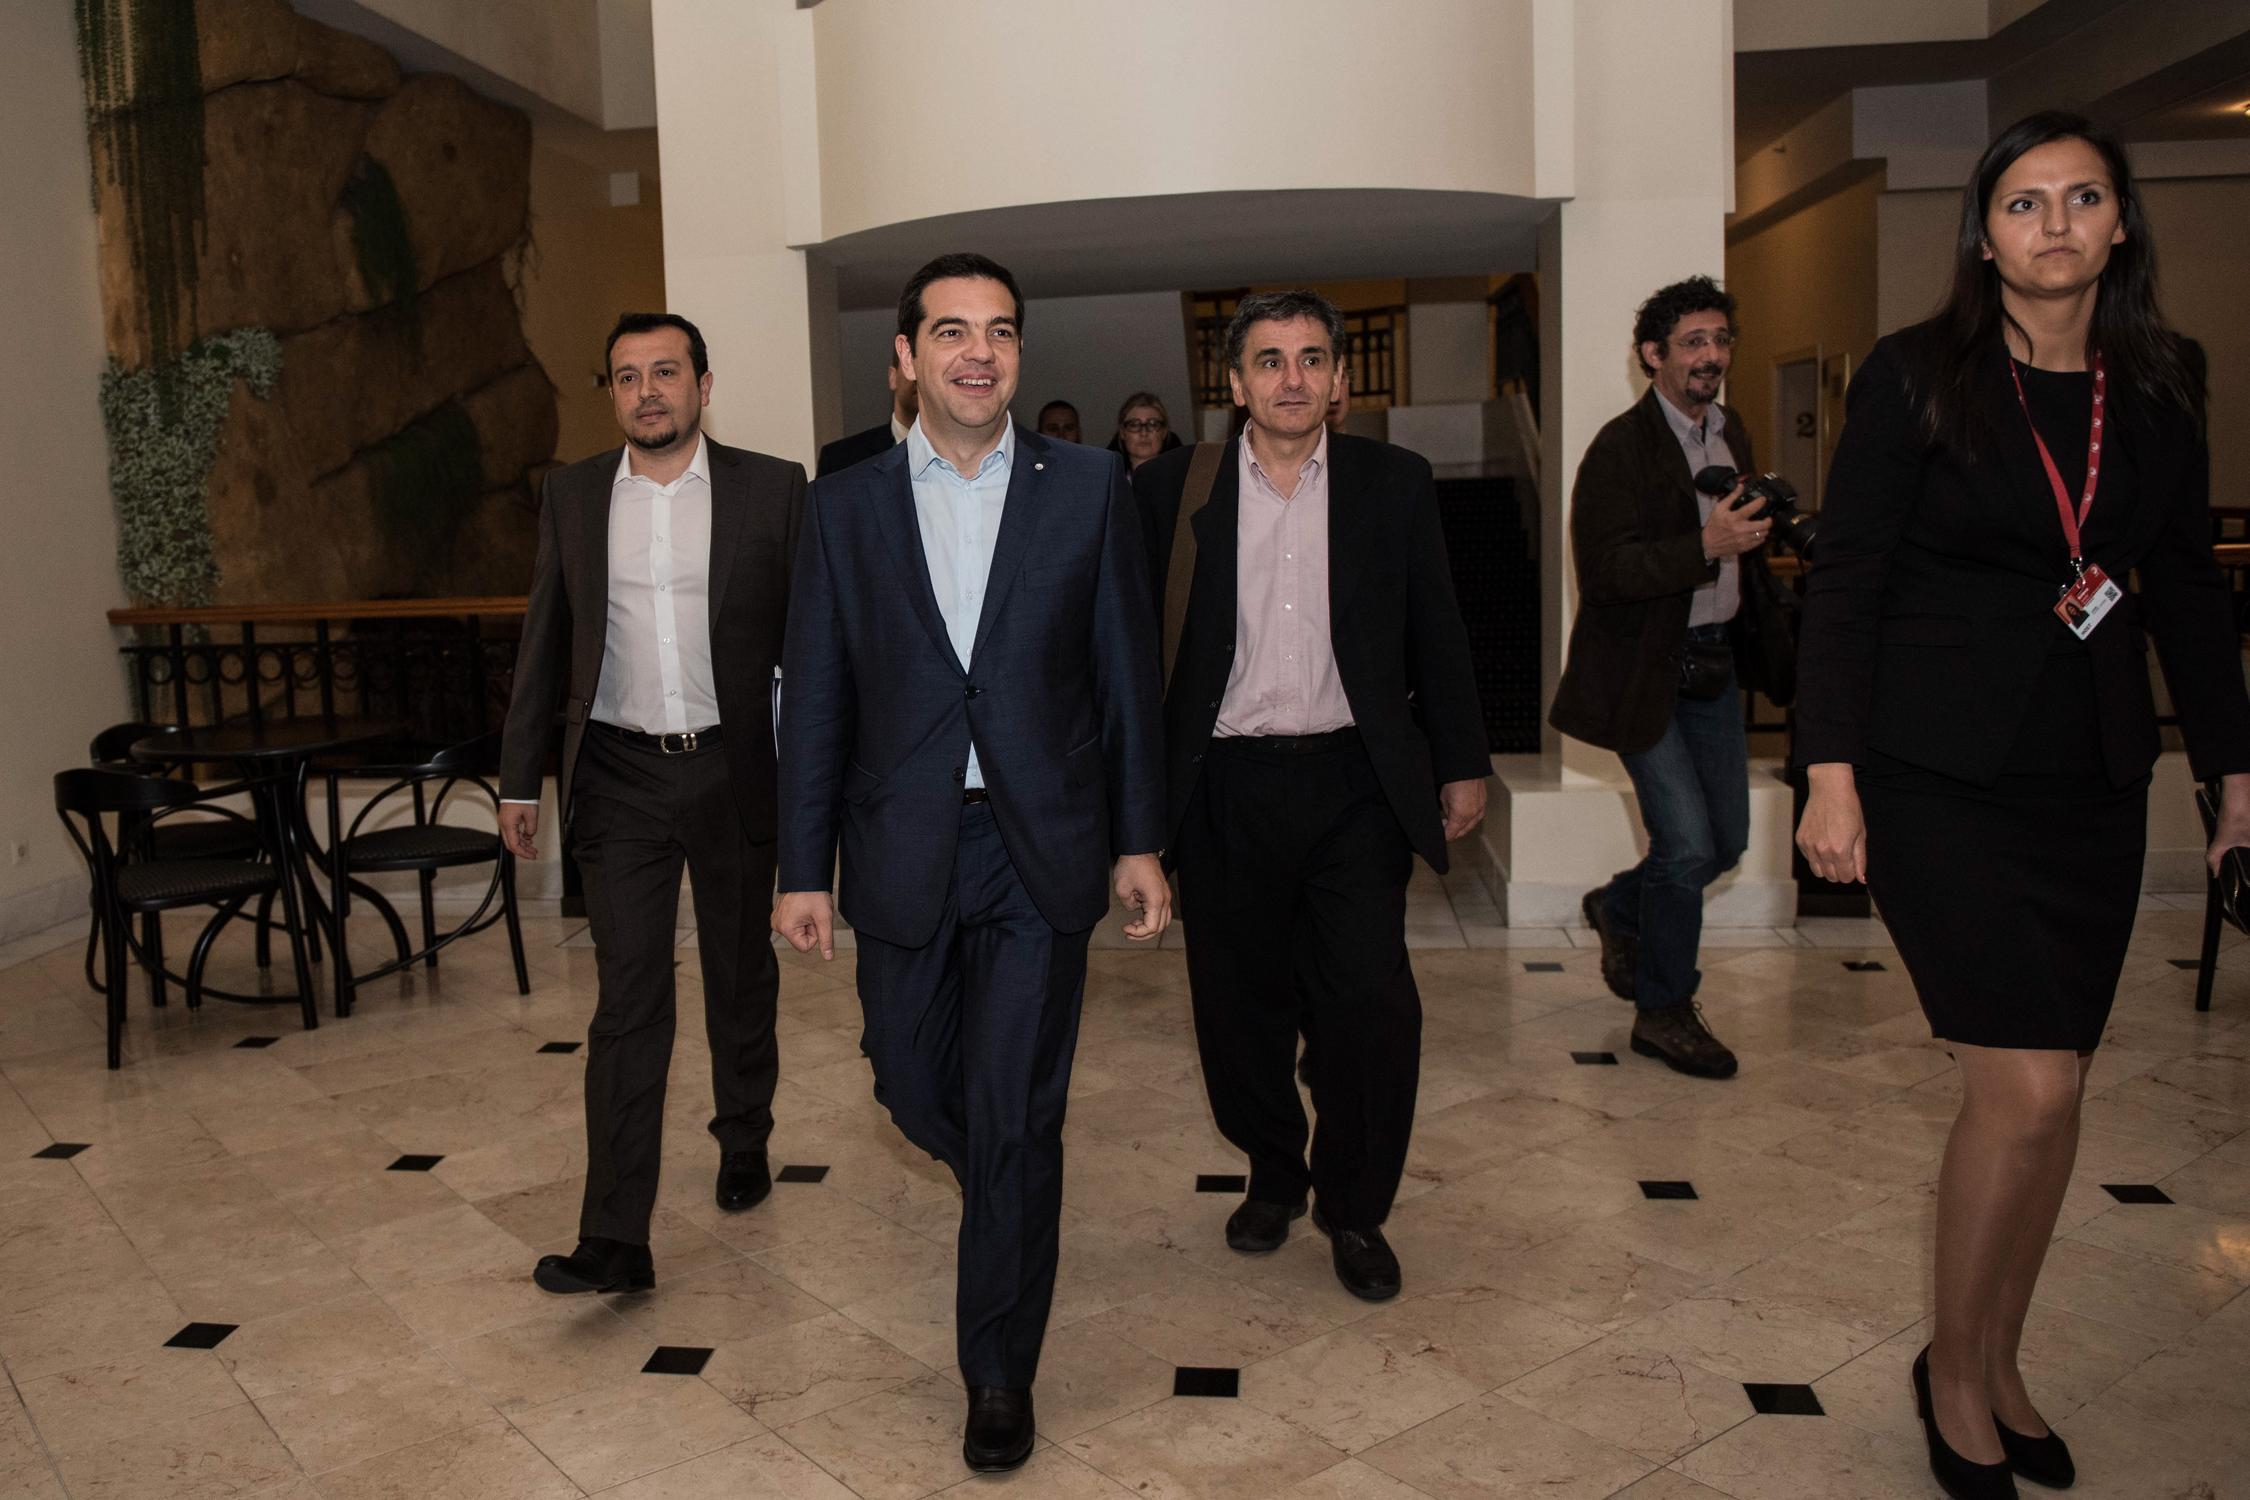 Θετική εξέλιξη η έκτακτη Σύνοδος Κορυφής για την Ελλάδα, λέει η κυβέρνηση